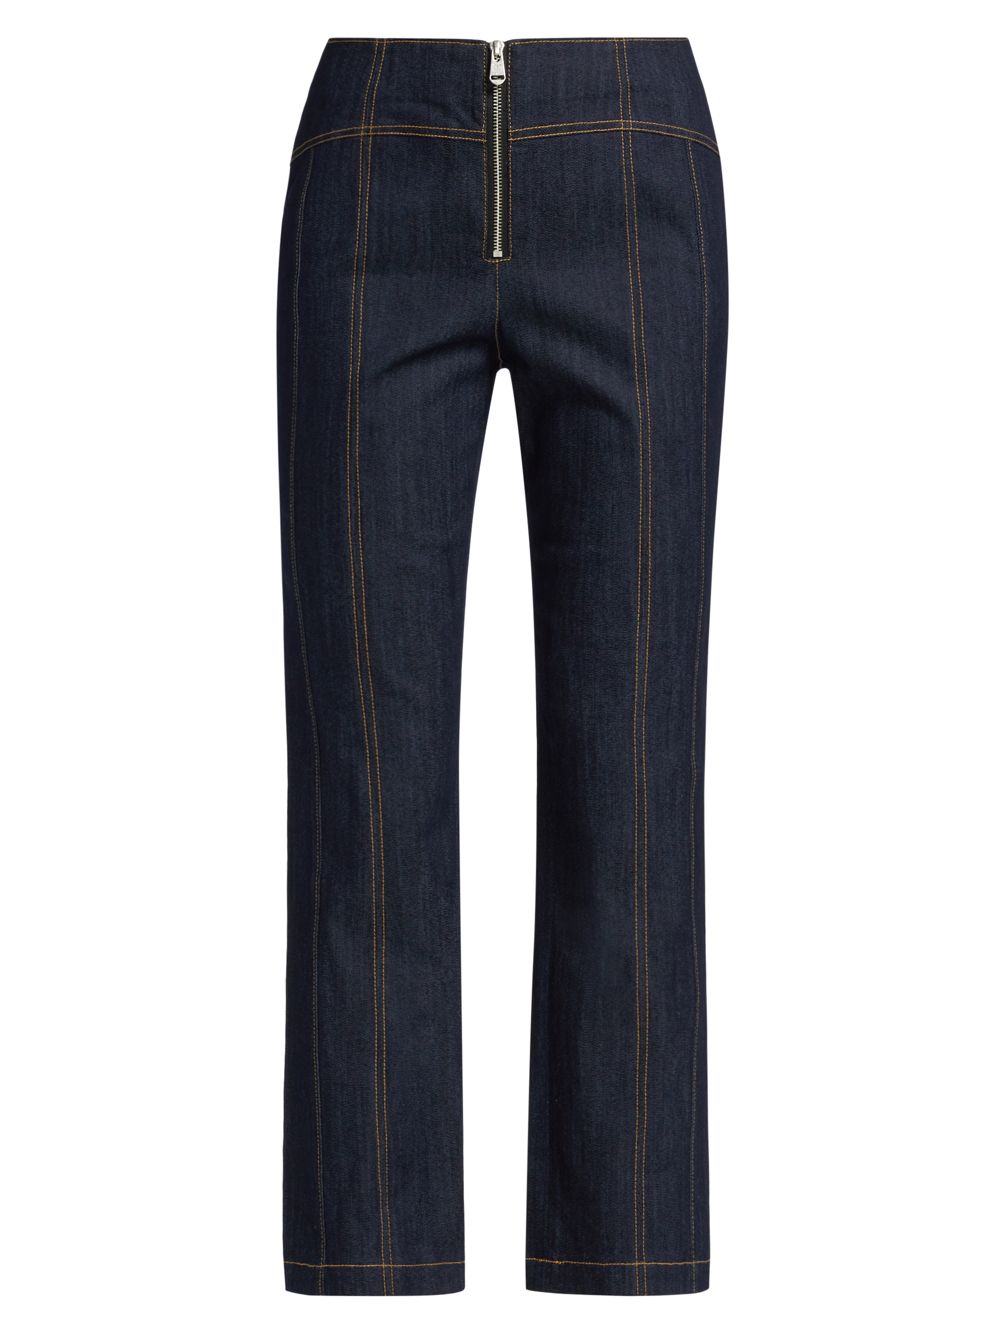 Эластичные прямые укороченные джинсы Loren с высокой посадкой Cinq à Sept, индиго джинсы francine с высокой посадкой цвета индиго cinq à sept цвет blue